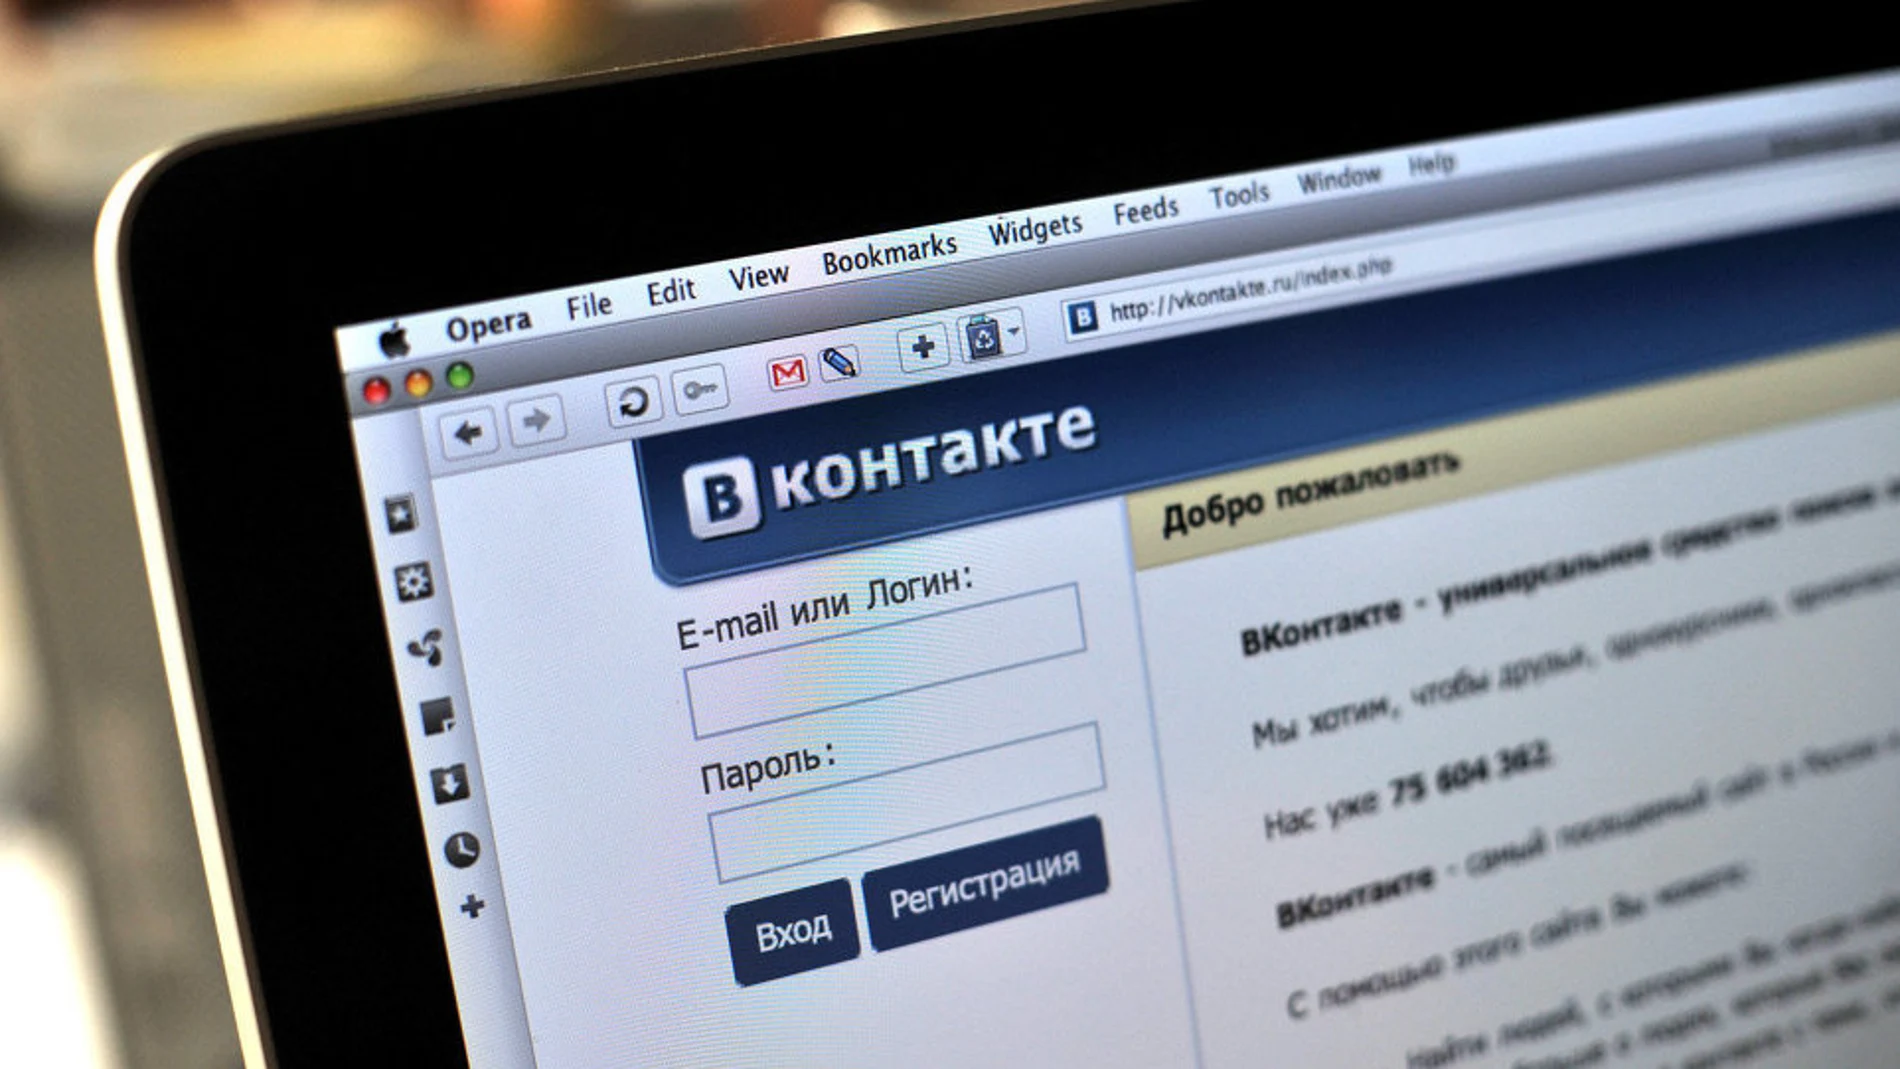 Las redes sociales rusas afectadas por el decreto son 'VKontakte' y 'Odnoklassniki'.